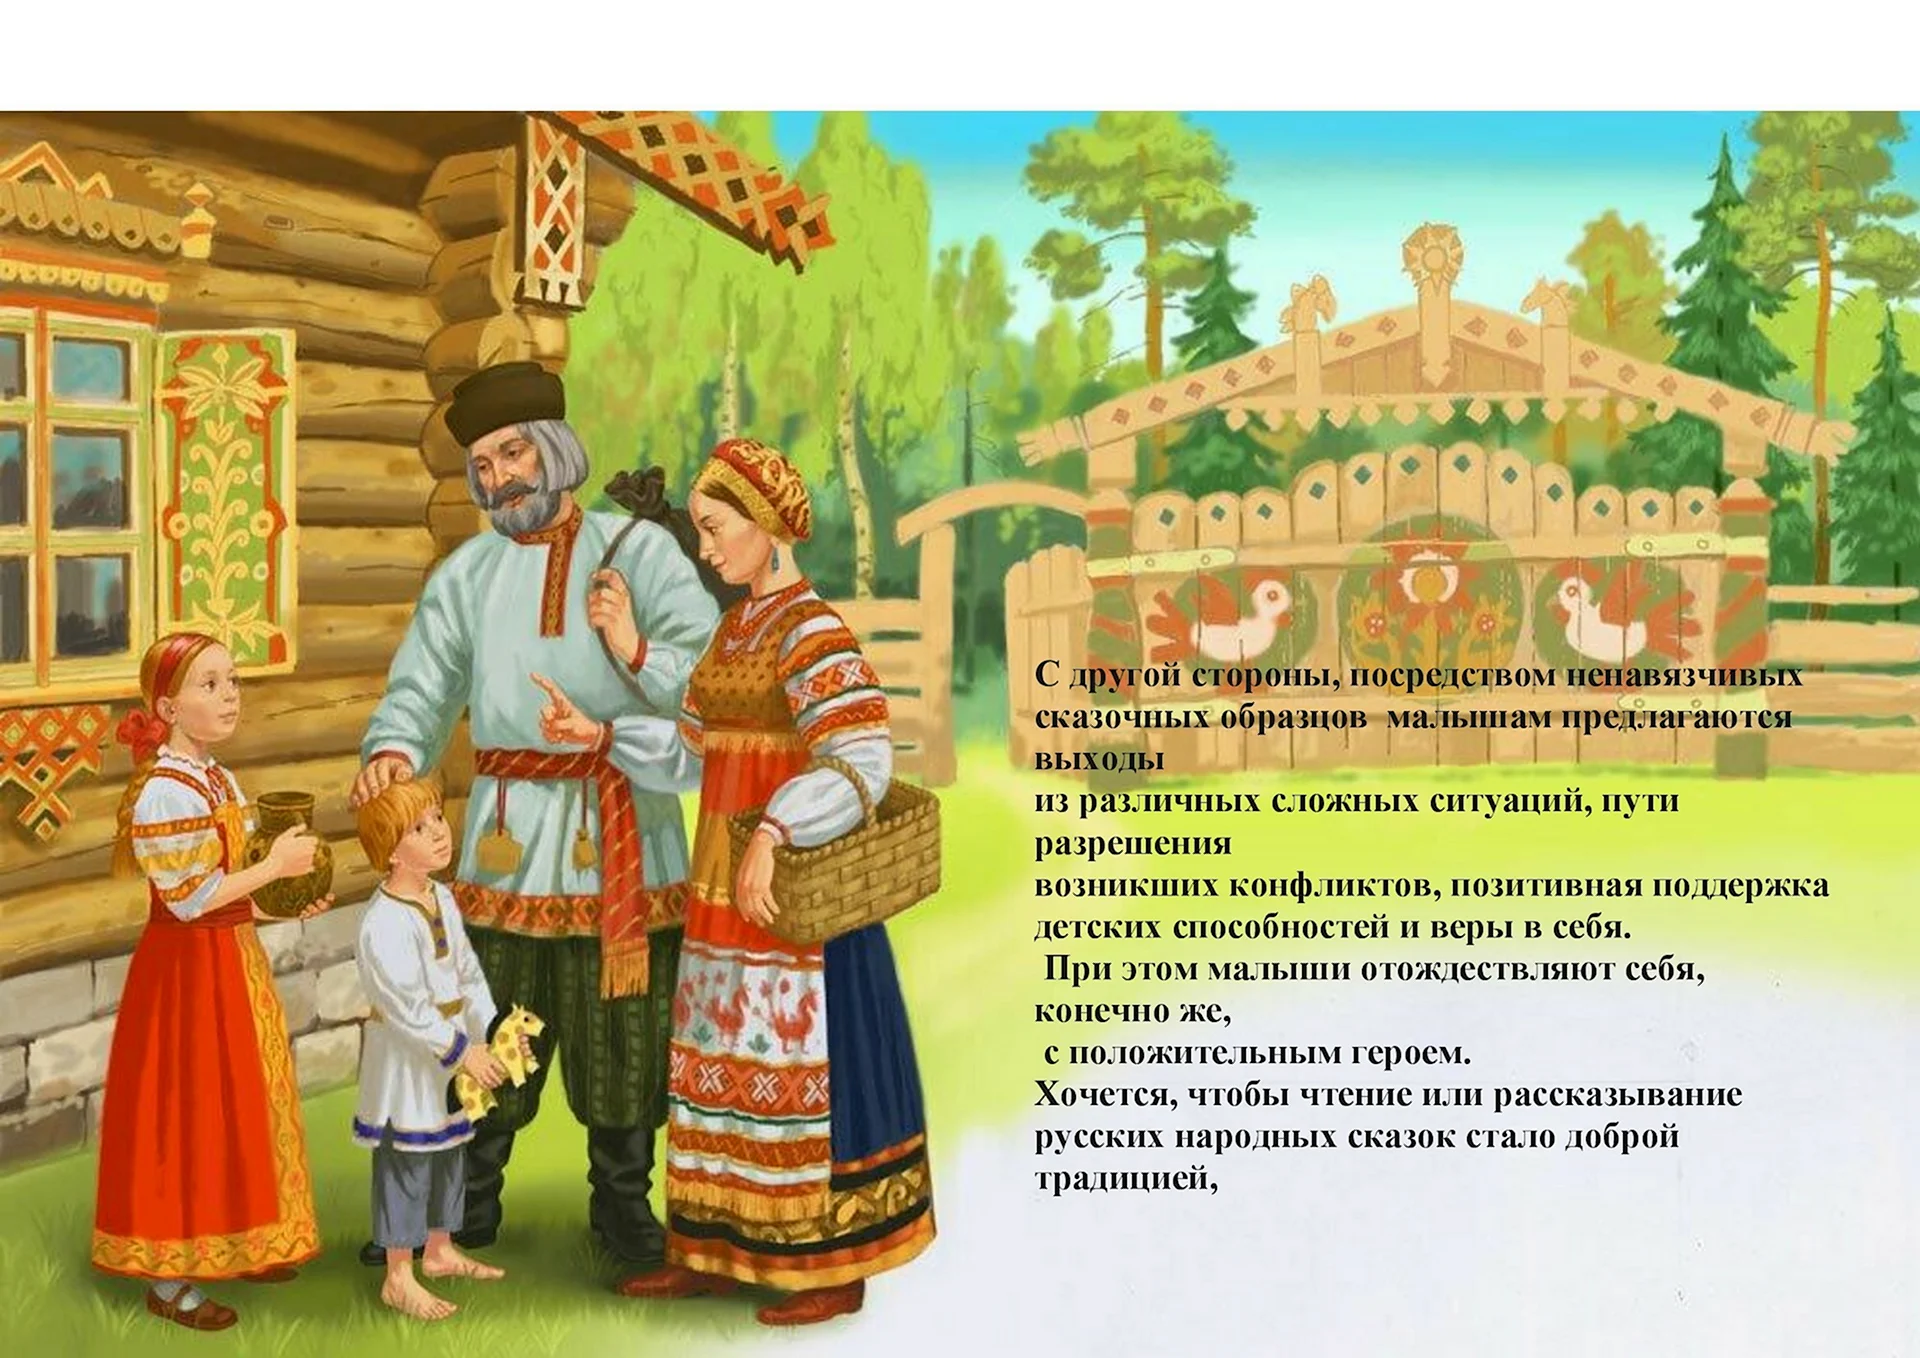 Русские народные сказки. Гуси-лебеди